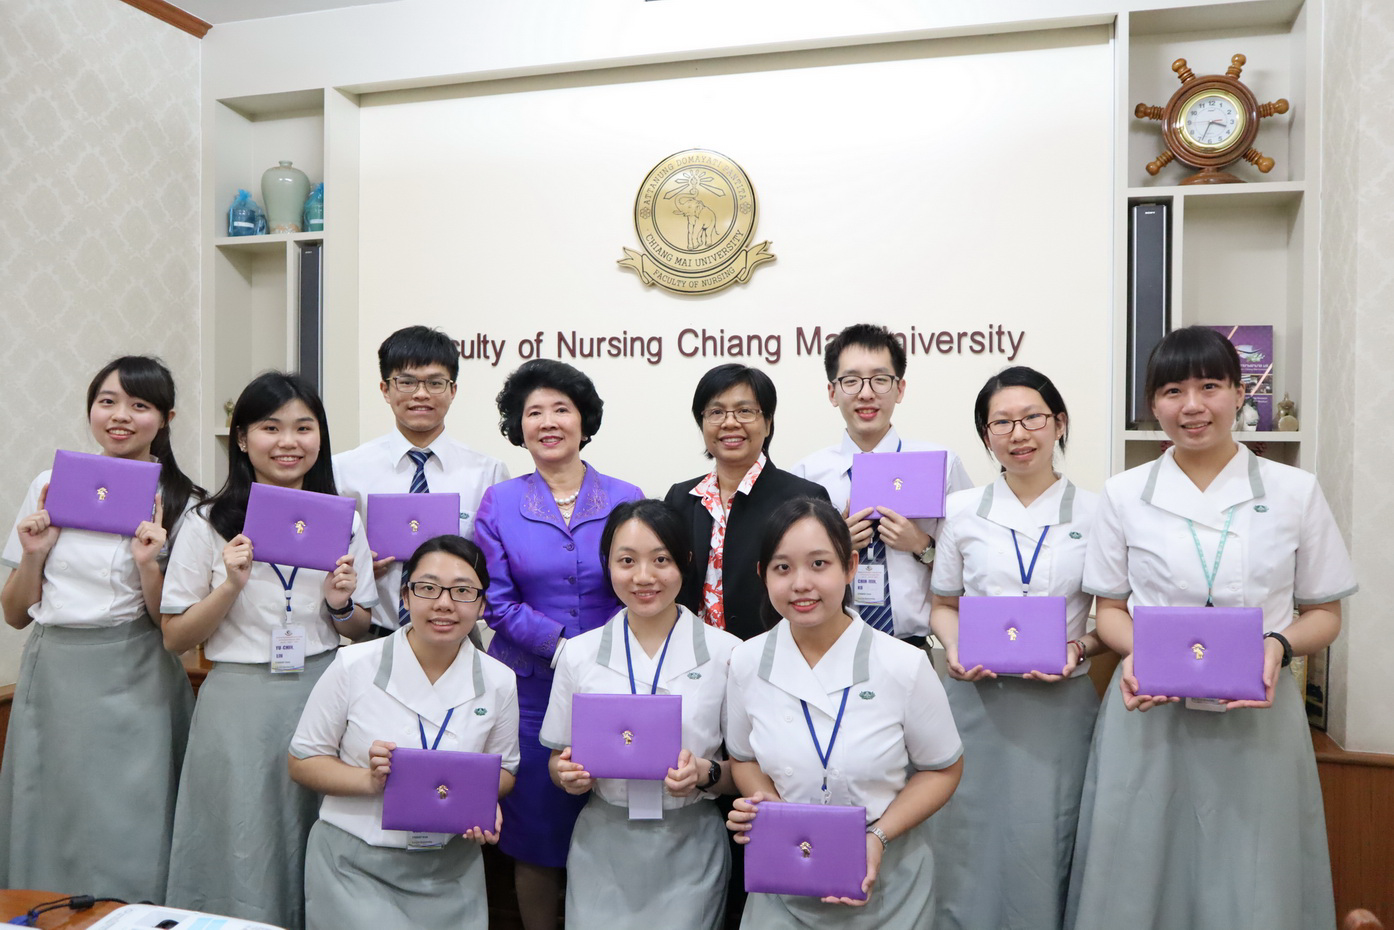 
	มอบเกียรติบัตรให้แก่นักศึกษาพยาบาลจาก Tzu Chi University ไต้หวัน
